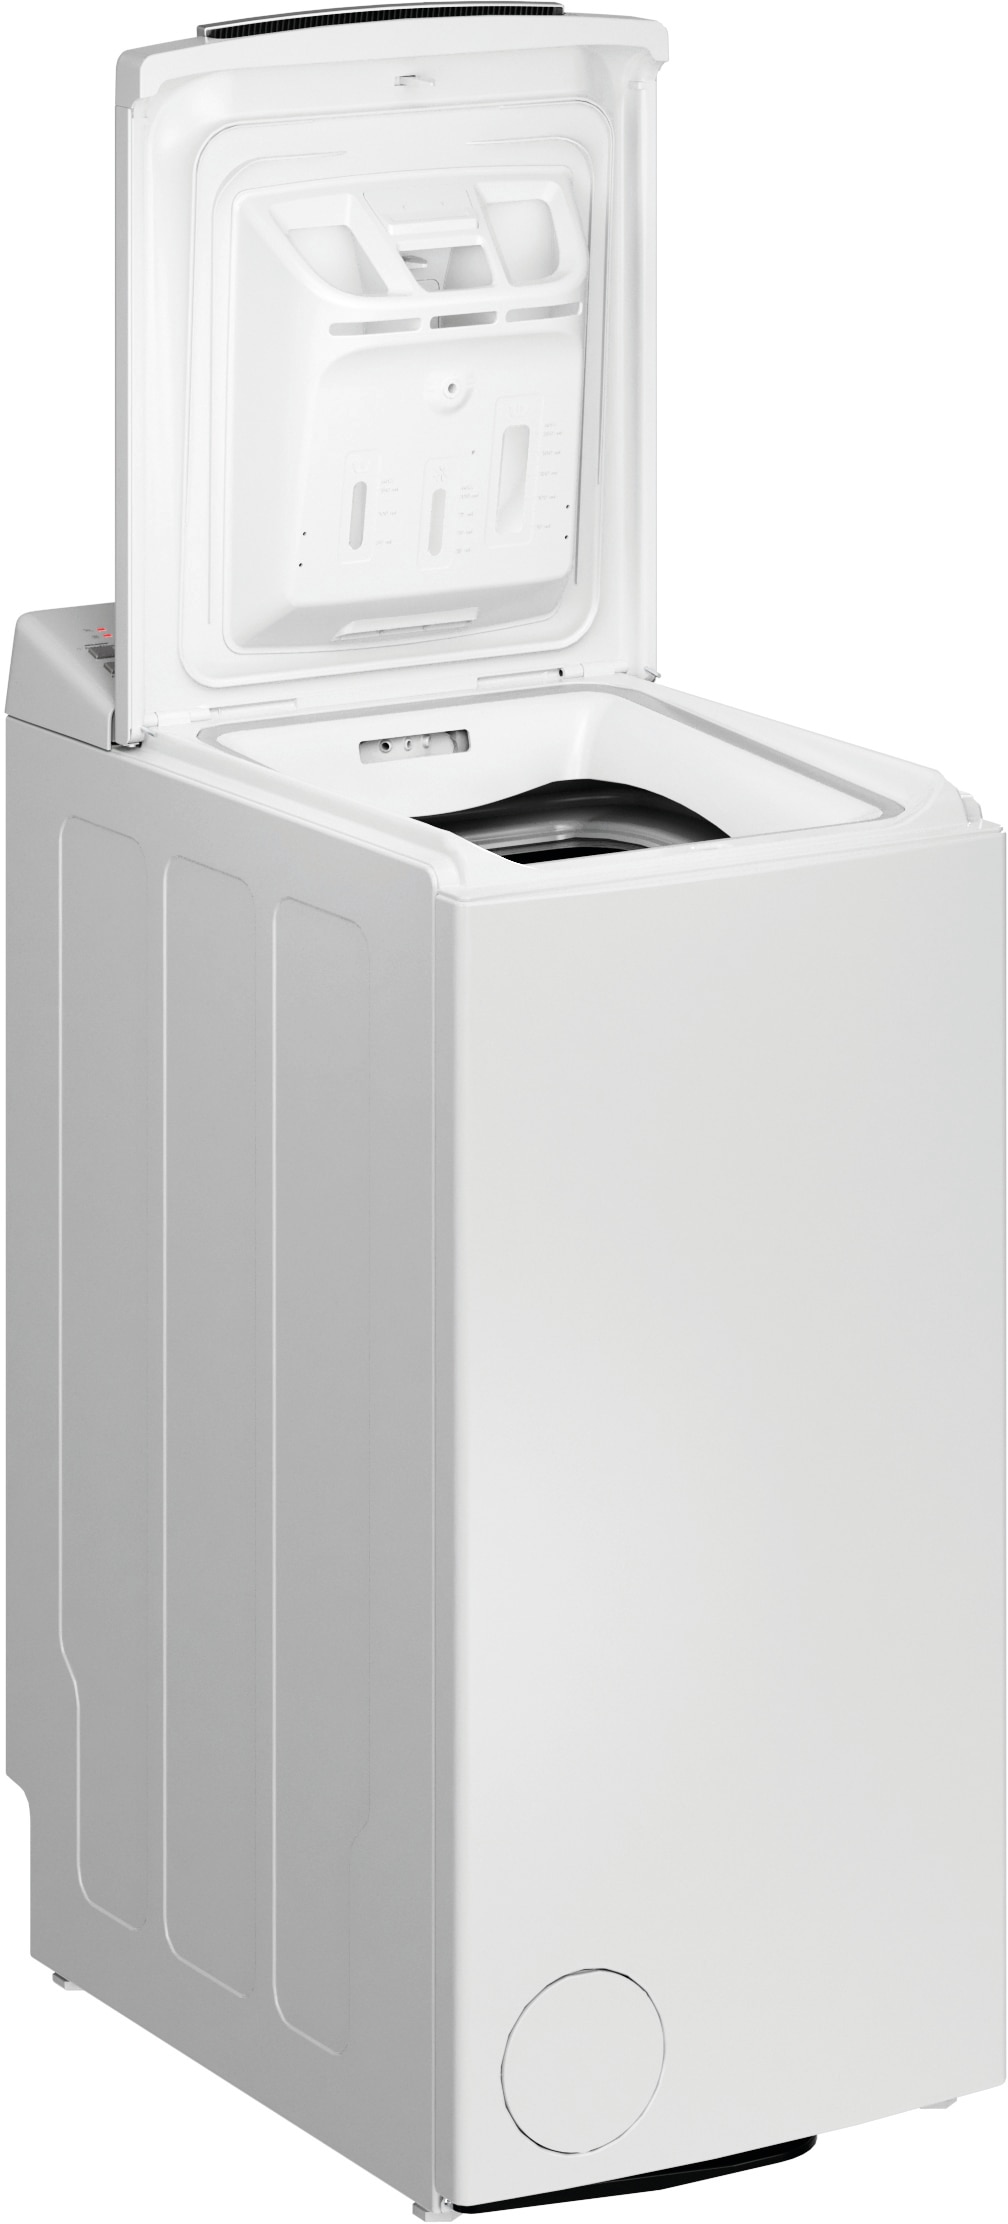 BAUKNECHT Waschmaschine Toplader "WMT Eco Smart 6513 Z C", WMT Eco Smart 6513 Z C, 6,5 kg, 1200 U/min